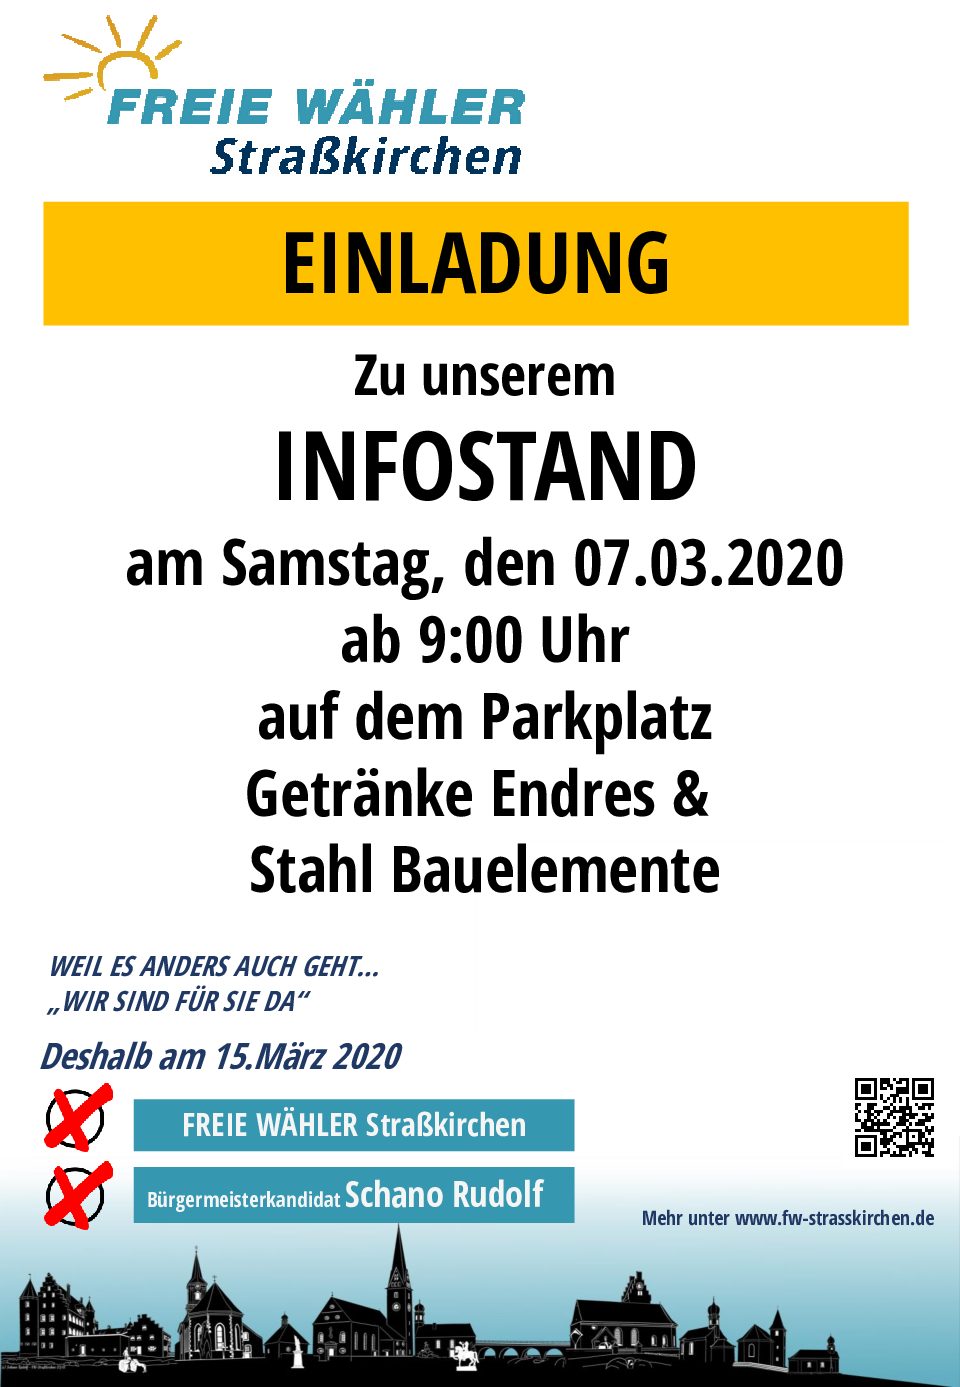 Infostand am 07.03.2020 Parkplatz Getränke Endres / Bauelemente Stahl